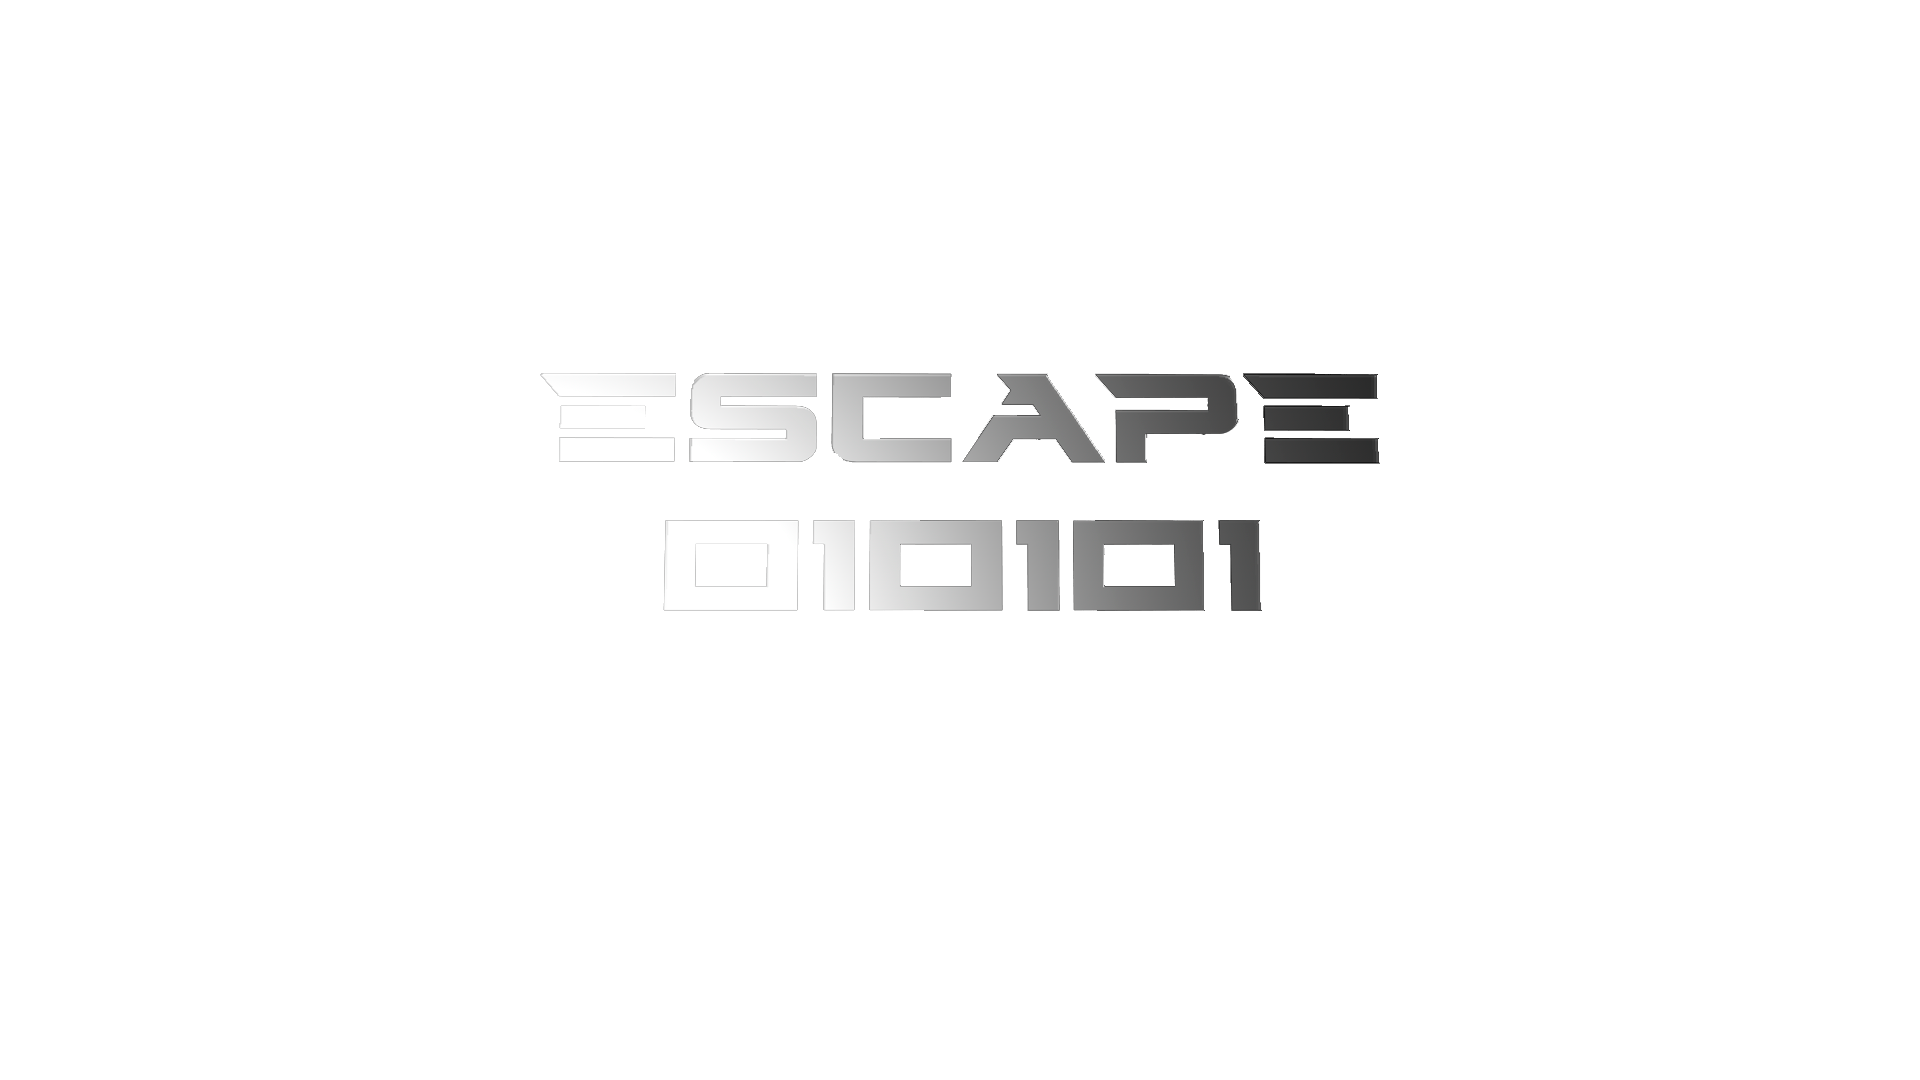 Escape 010101 logo